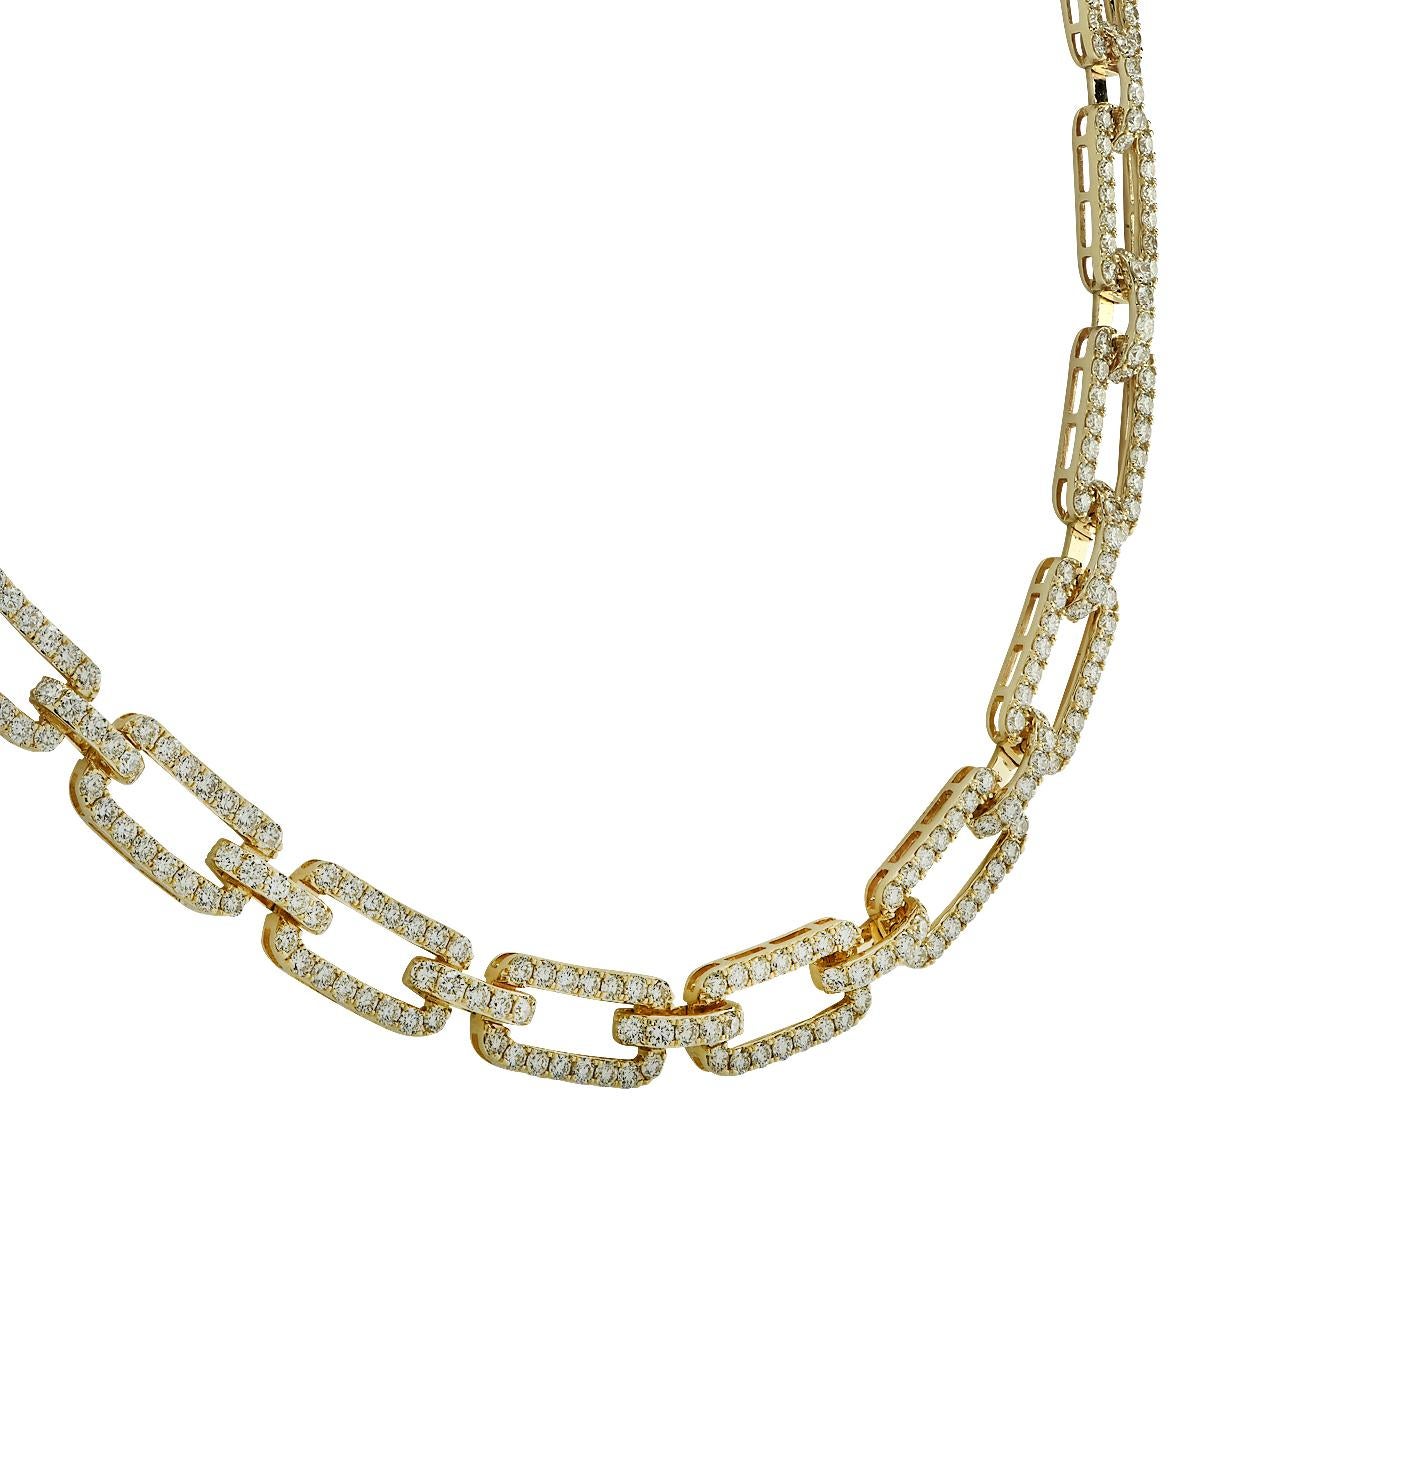 Round Cut Vivid Diamonds 12.45 Carat Diamond Necklace For Sale